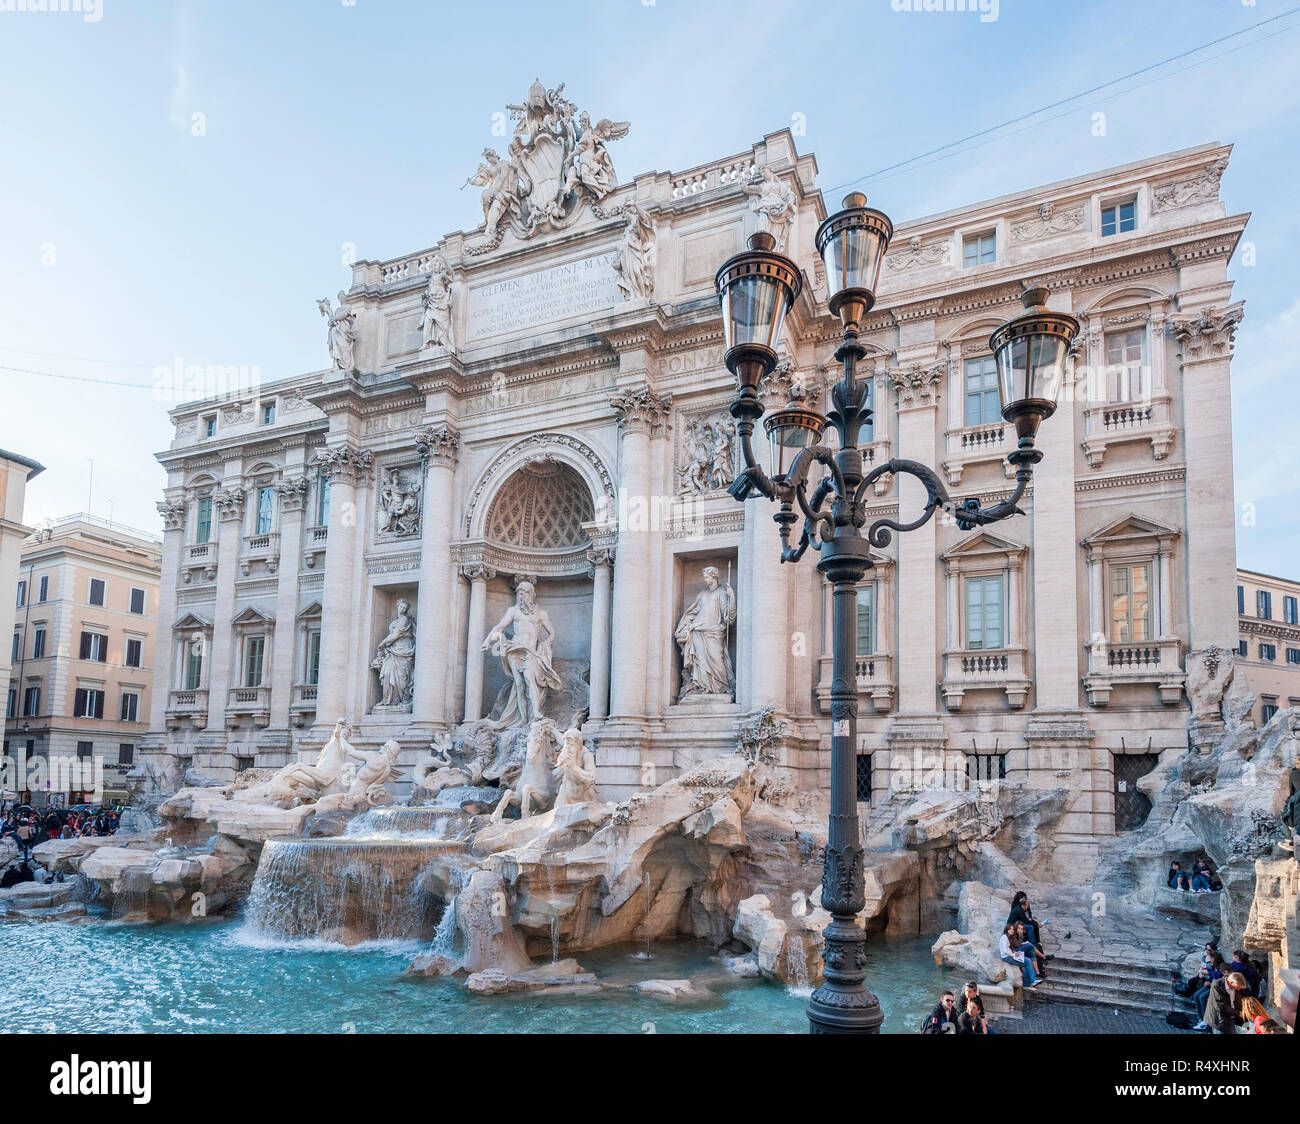 Fontana de Trevi Roma Italia construido por Nicola Salvi y Giuseppe Pannini y está basado en parte en los primeros diseños de Bernini. Foto de stock